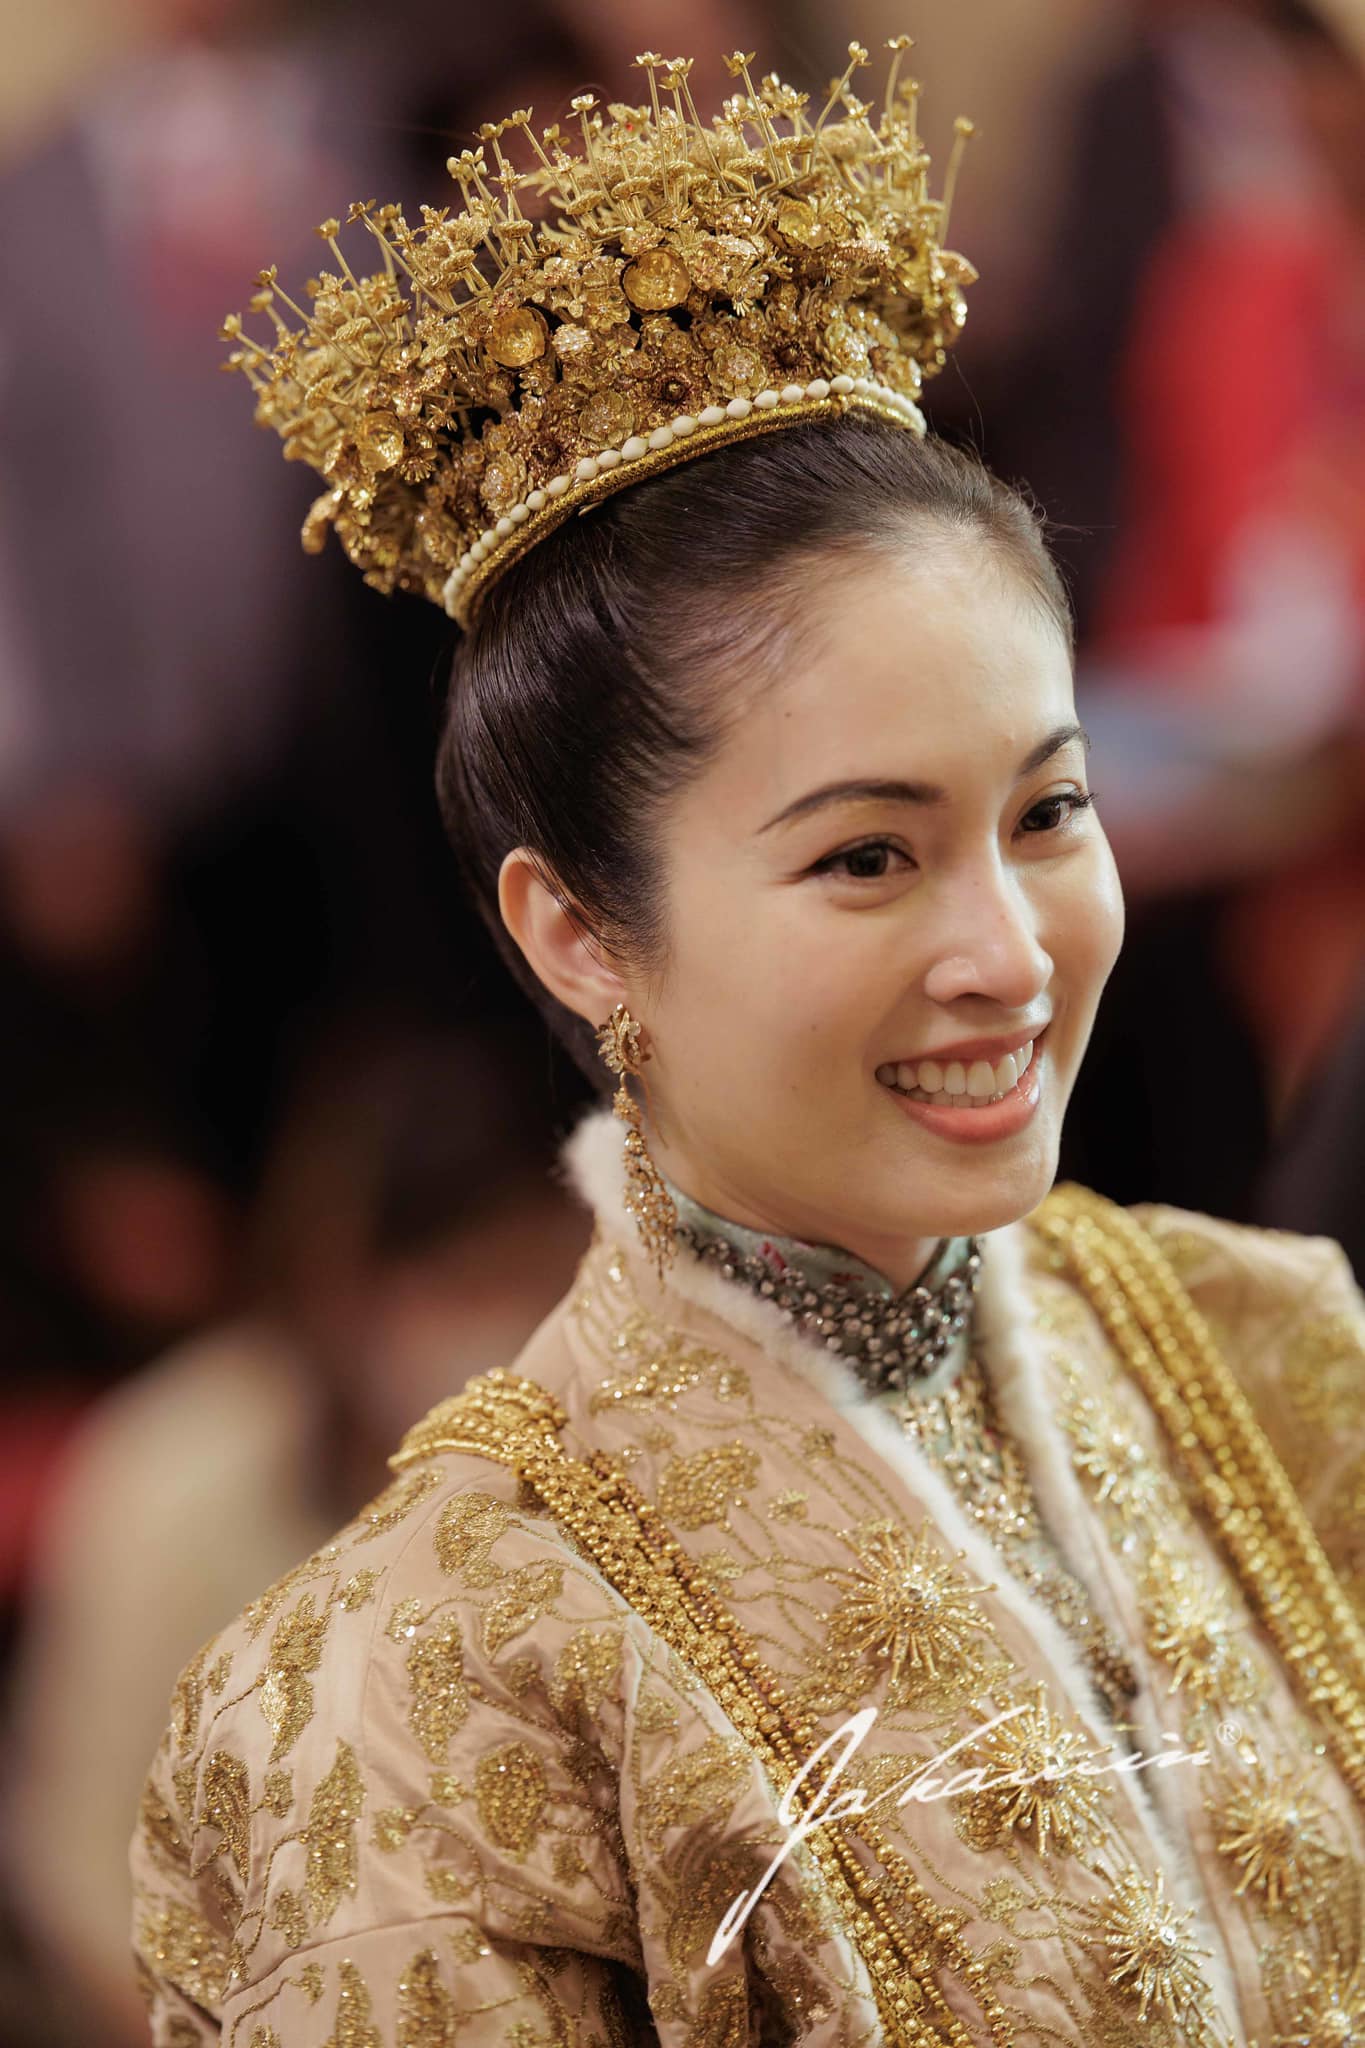 Đám cưới trong mơ của 'mỹ nhân chuyển giới đẹp nhất Thái Lan' Nong Poy: Cô dâu đội vương miện bằng vàng hạnh phúc cùng chú rể bước vào hôn lễ - Ảnh 5.